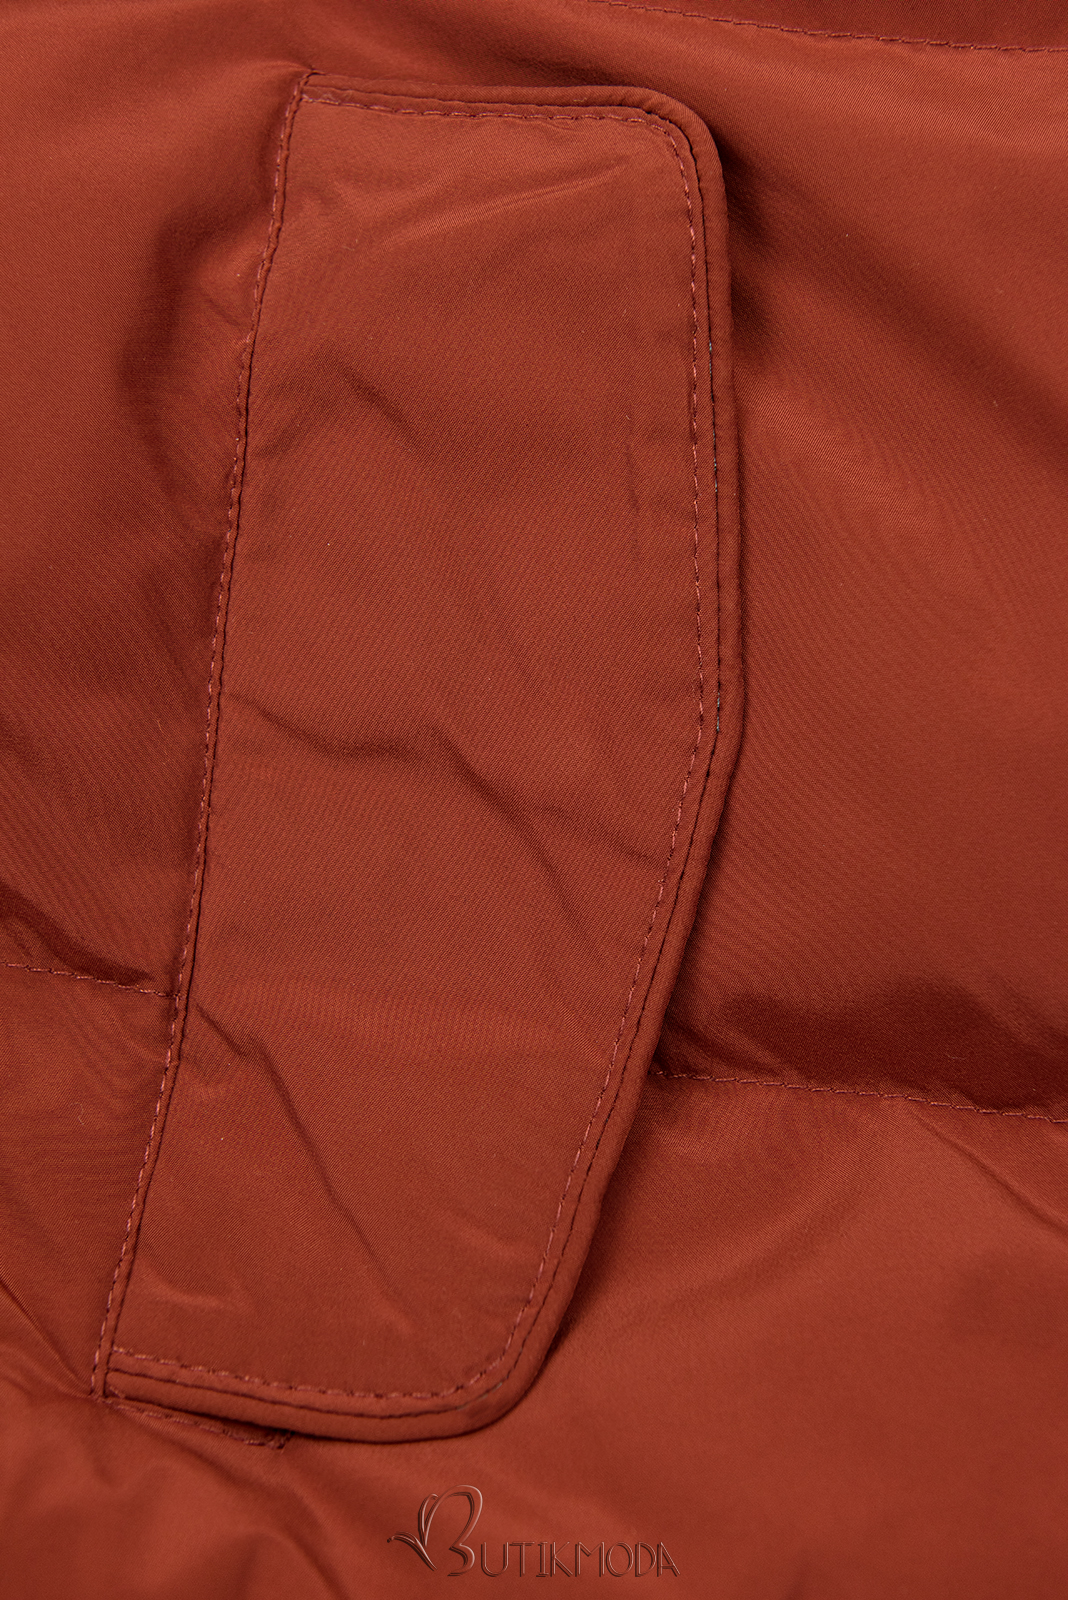 Paliszanderbarna színű téli kabát plüss béléssel